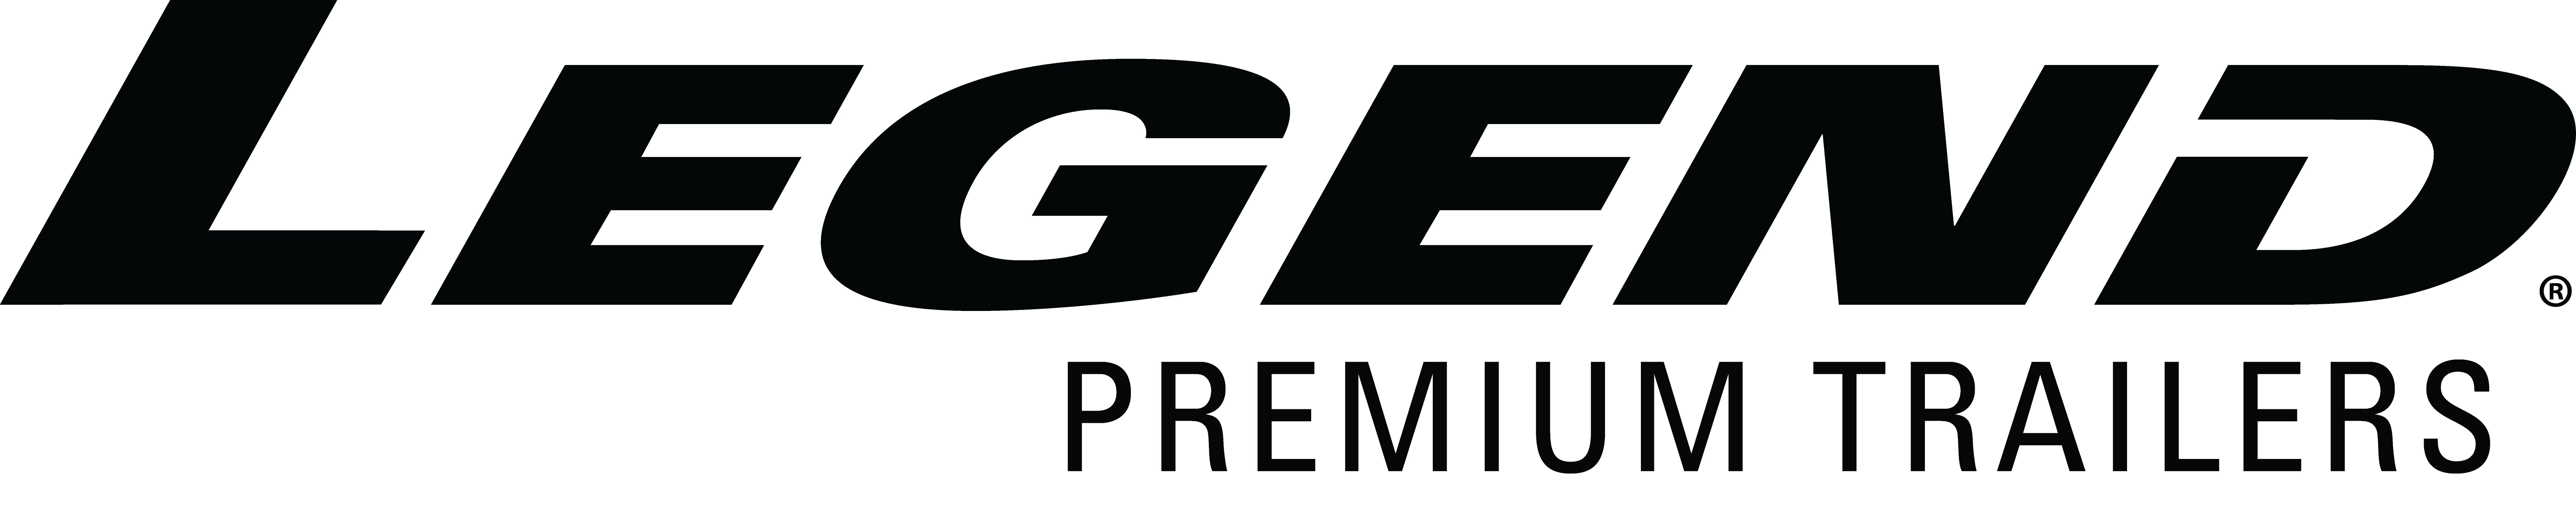 Legend Premium Trailers logo